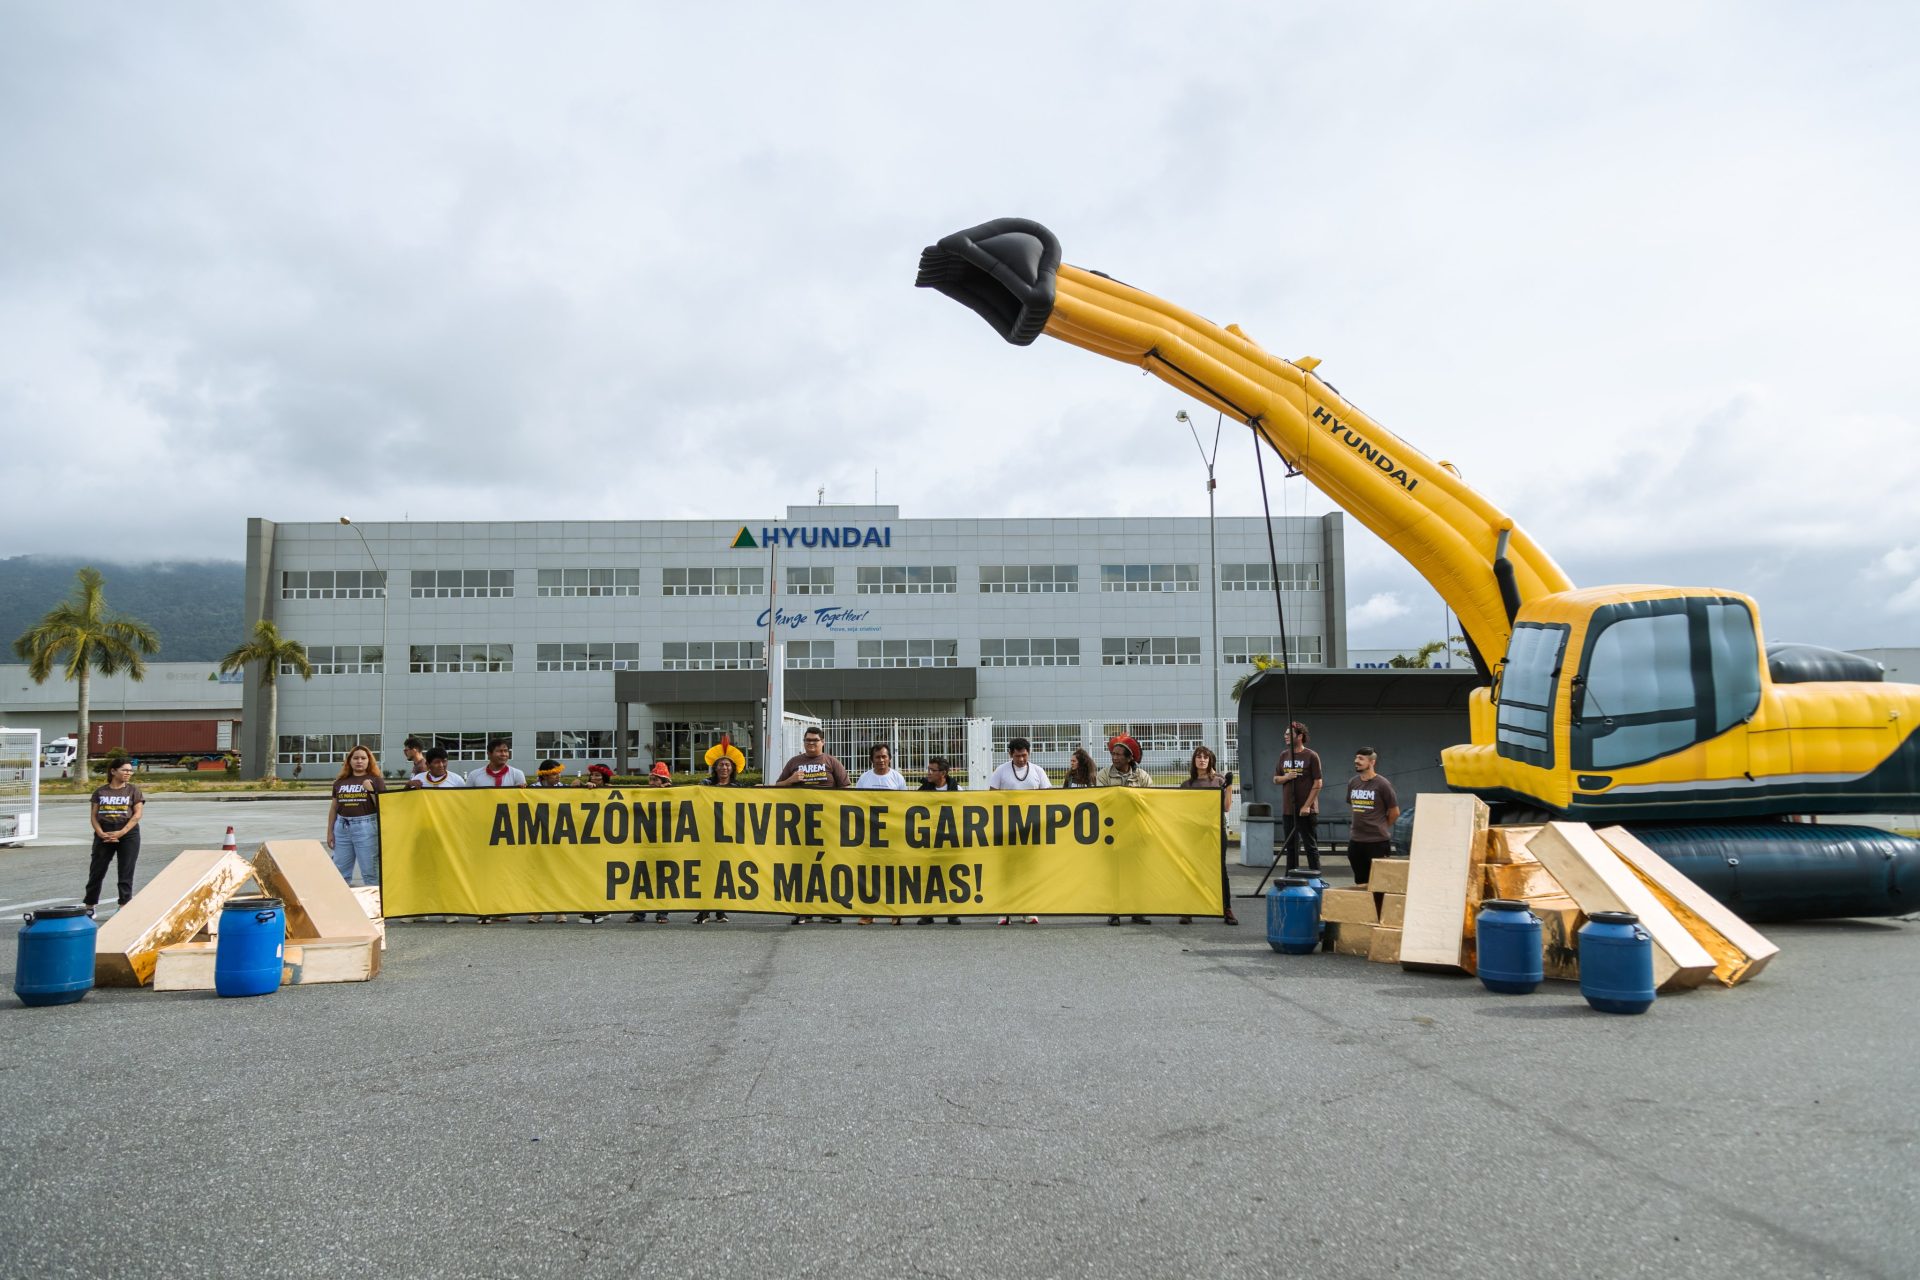 Greenpeace cobra Hyundai sobre venda e controle de escavadeiras utilizadas para garimpo ilegal - Foto: Tuane Fernandes / Greenpeace Brasil